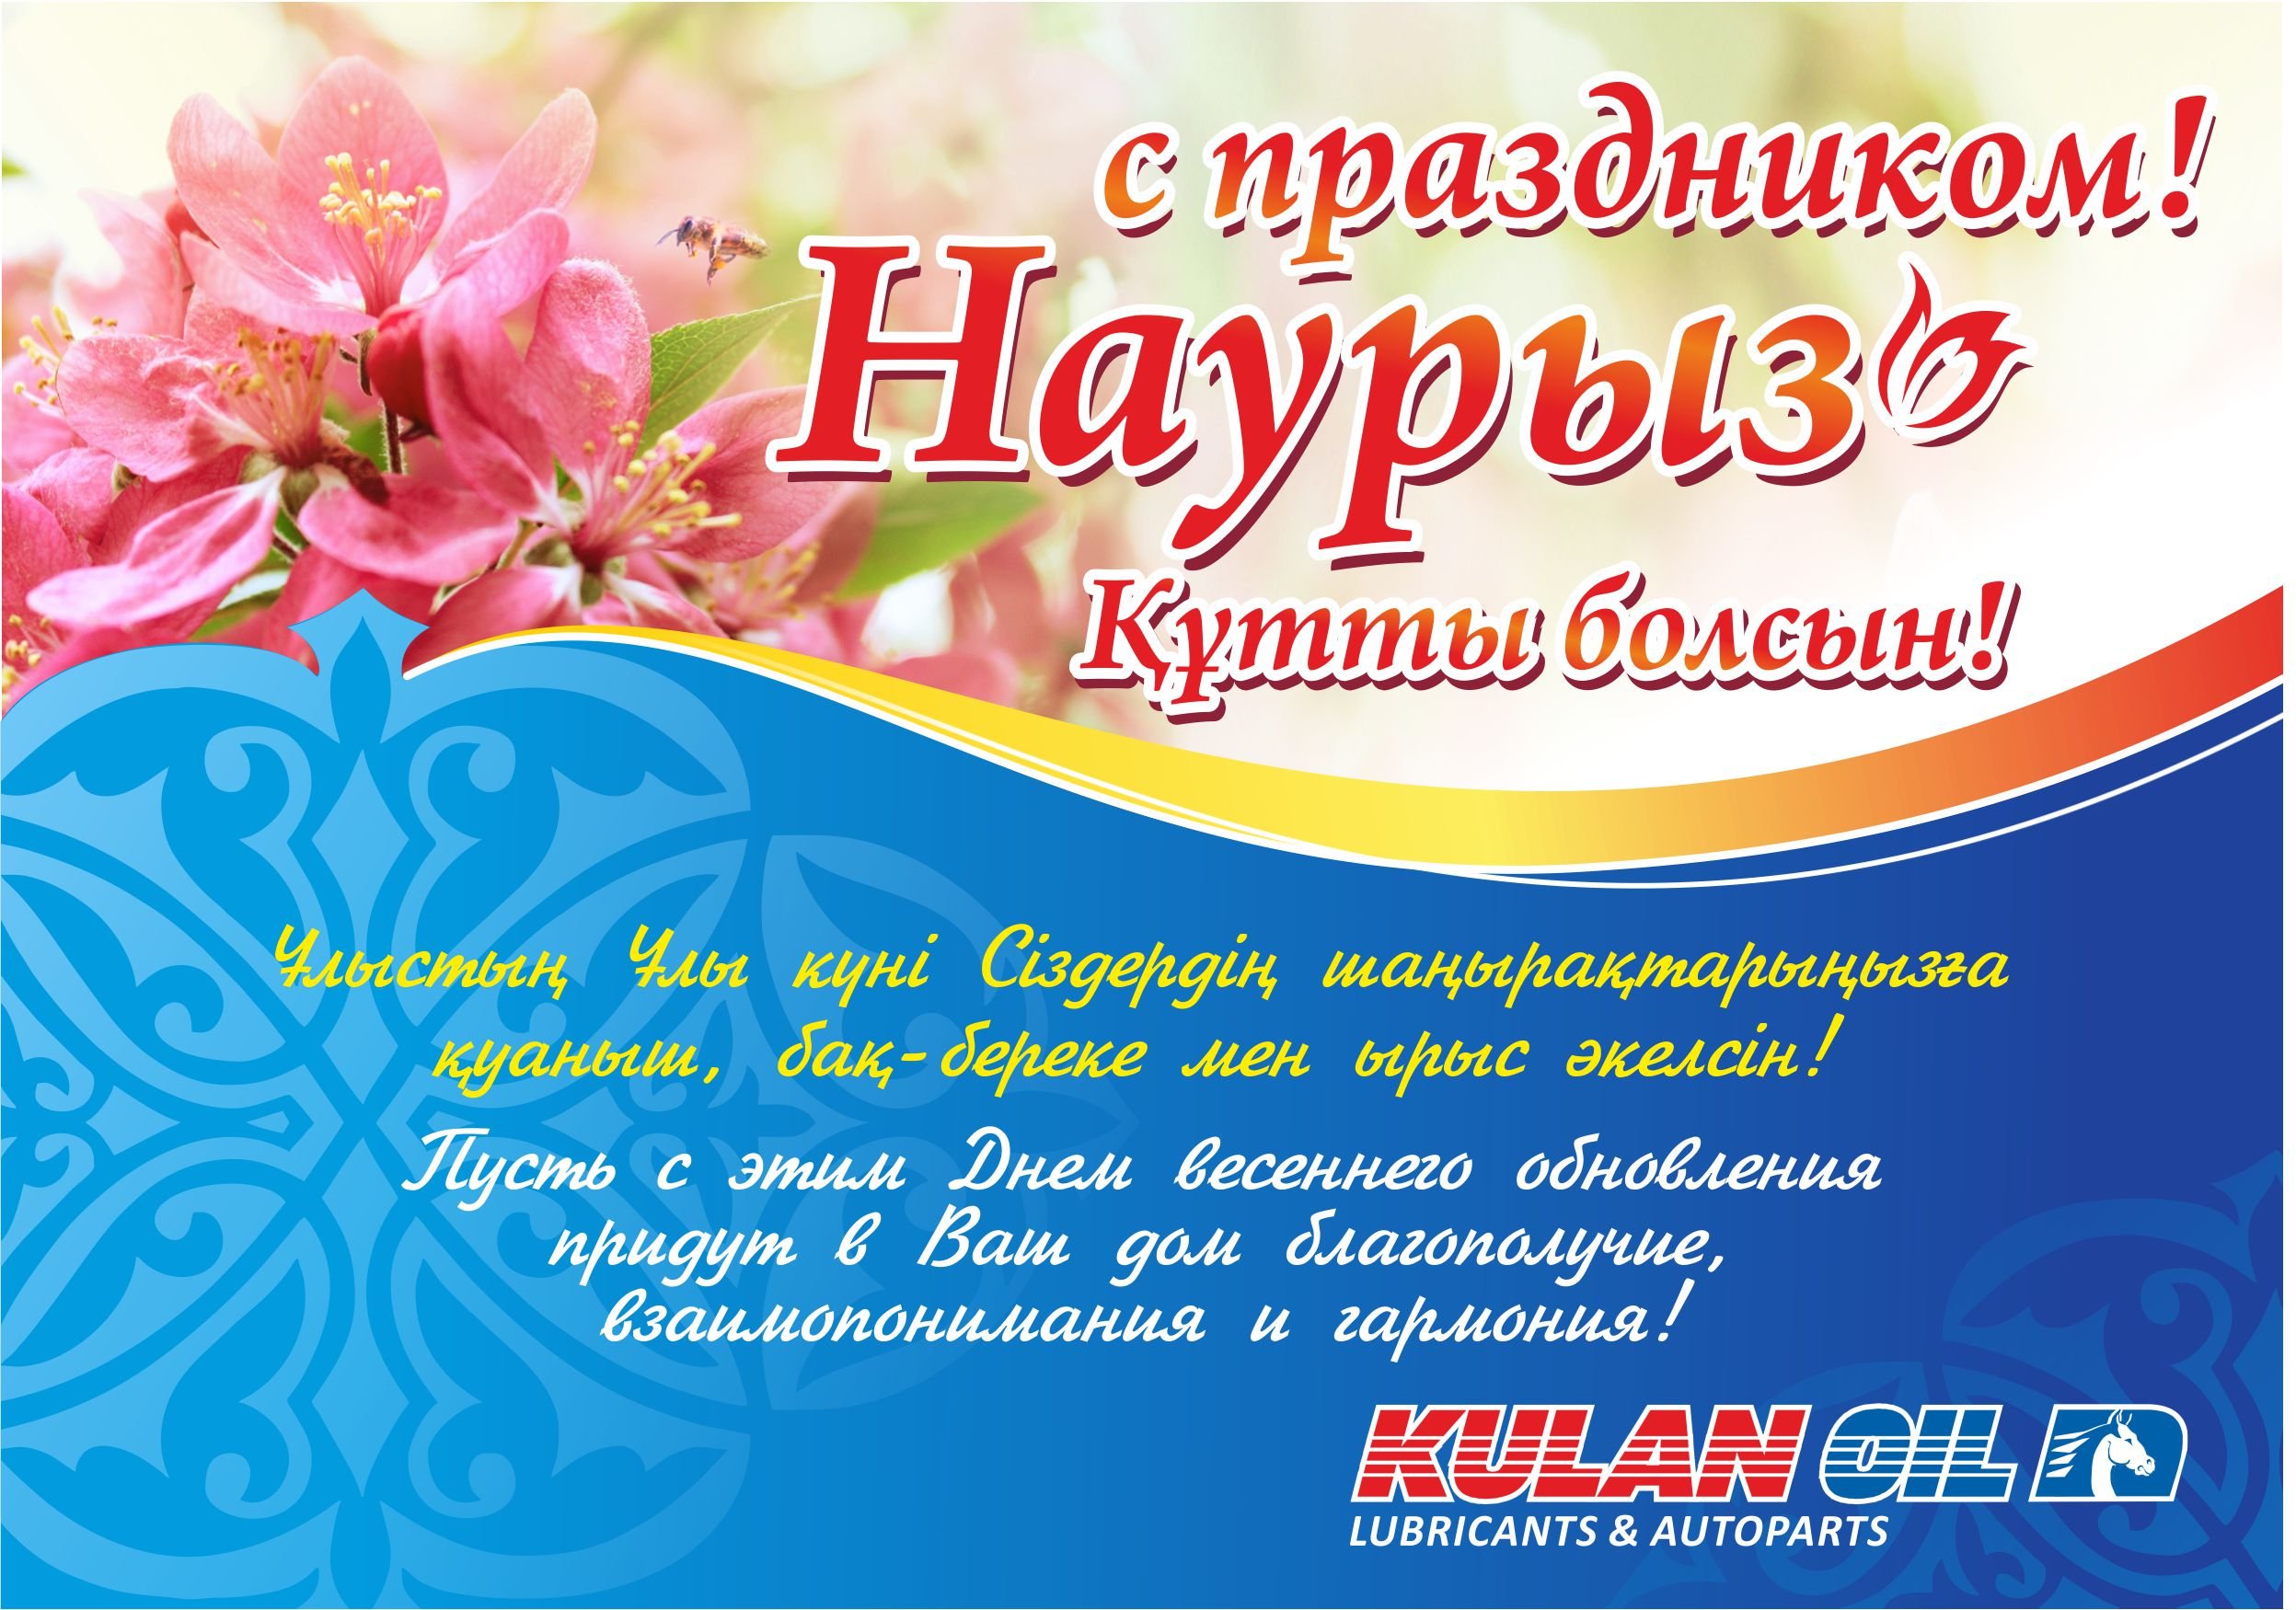 Поздравляем с прекрасным весенним праздником Навруз! | Uzbekistan Airways